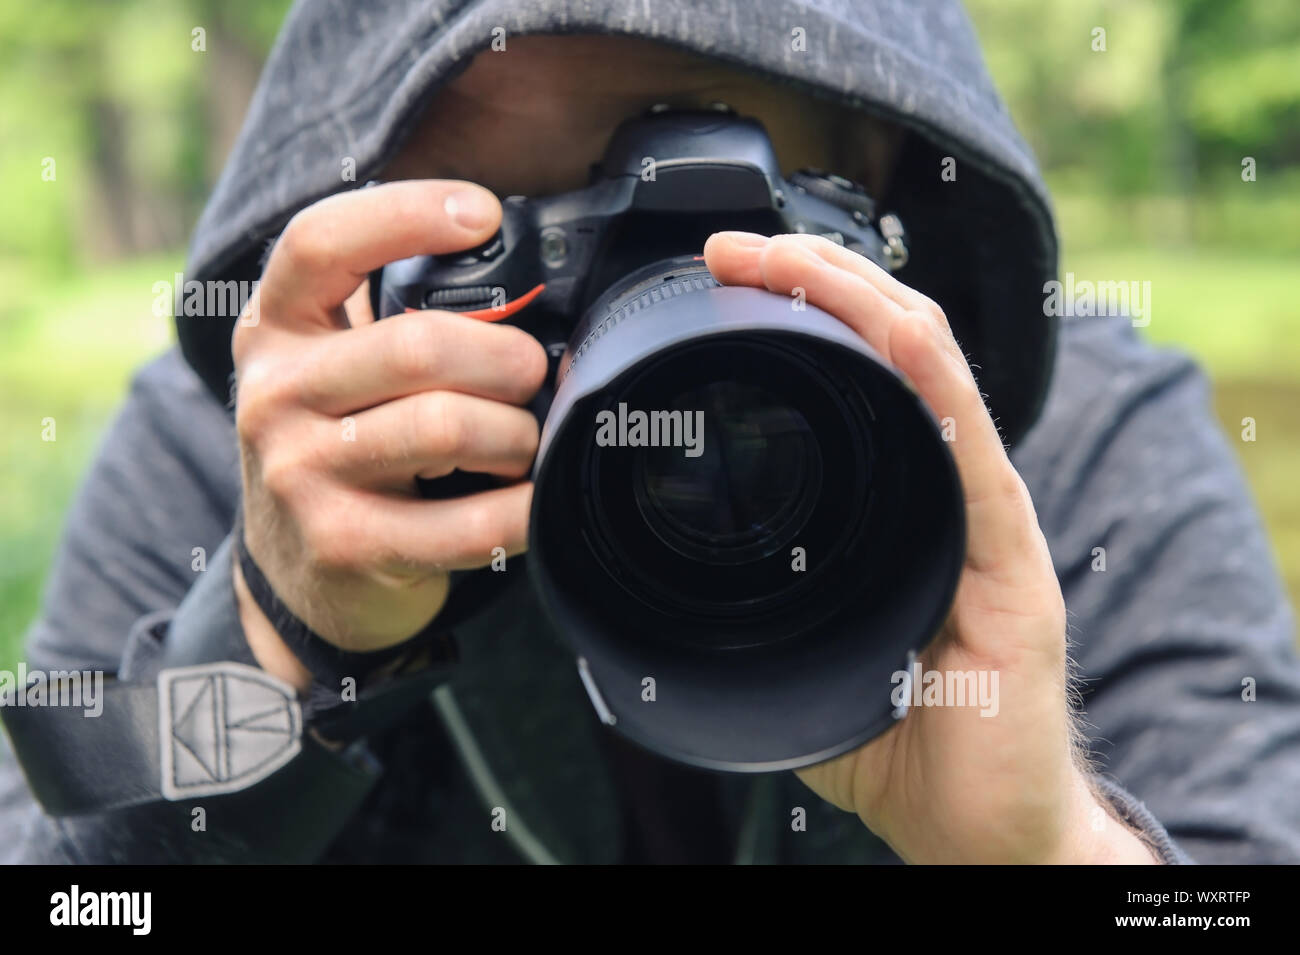 El fotógrafo oculto con la cámara. Un hombre en una capucha oculta está tomando fotografías. Foto de stock